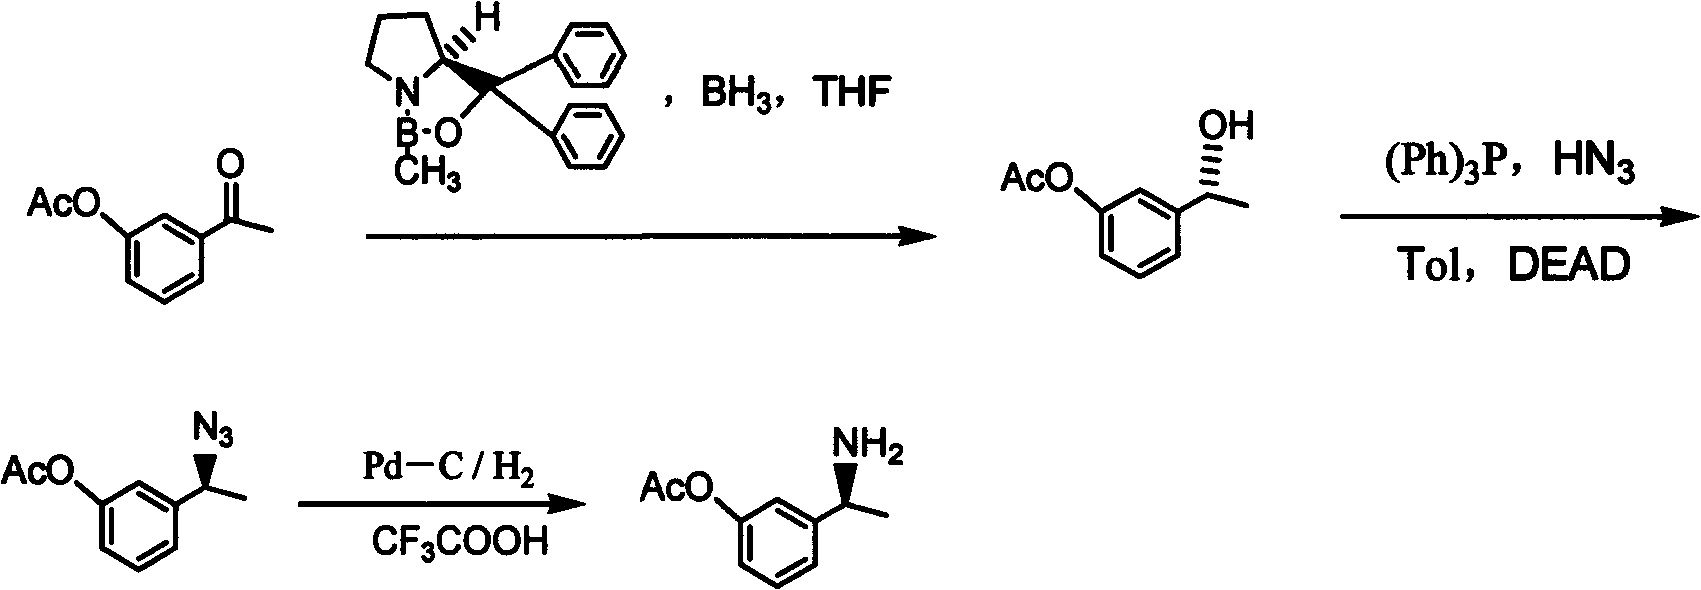 (S)-3-(1-dimethylaminoethyl)phenol preparation method